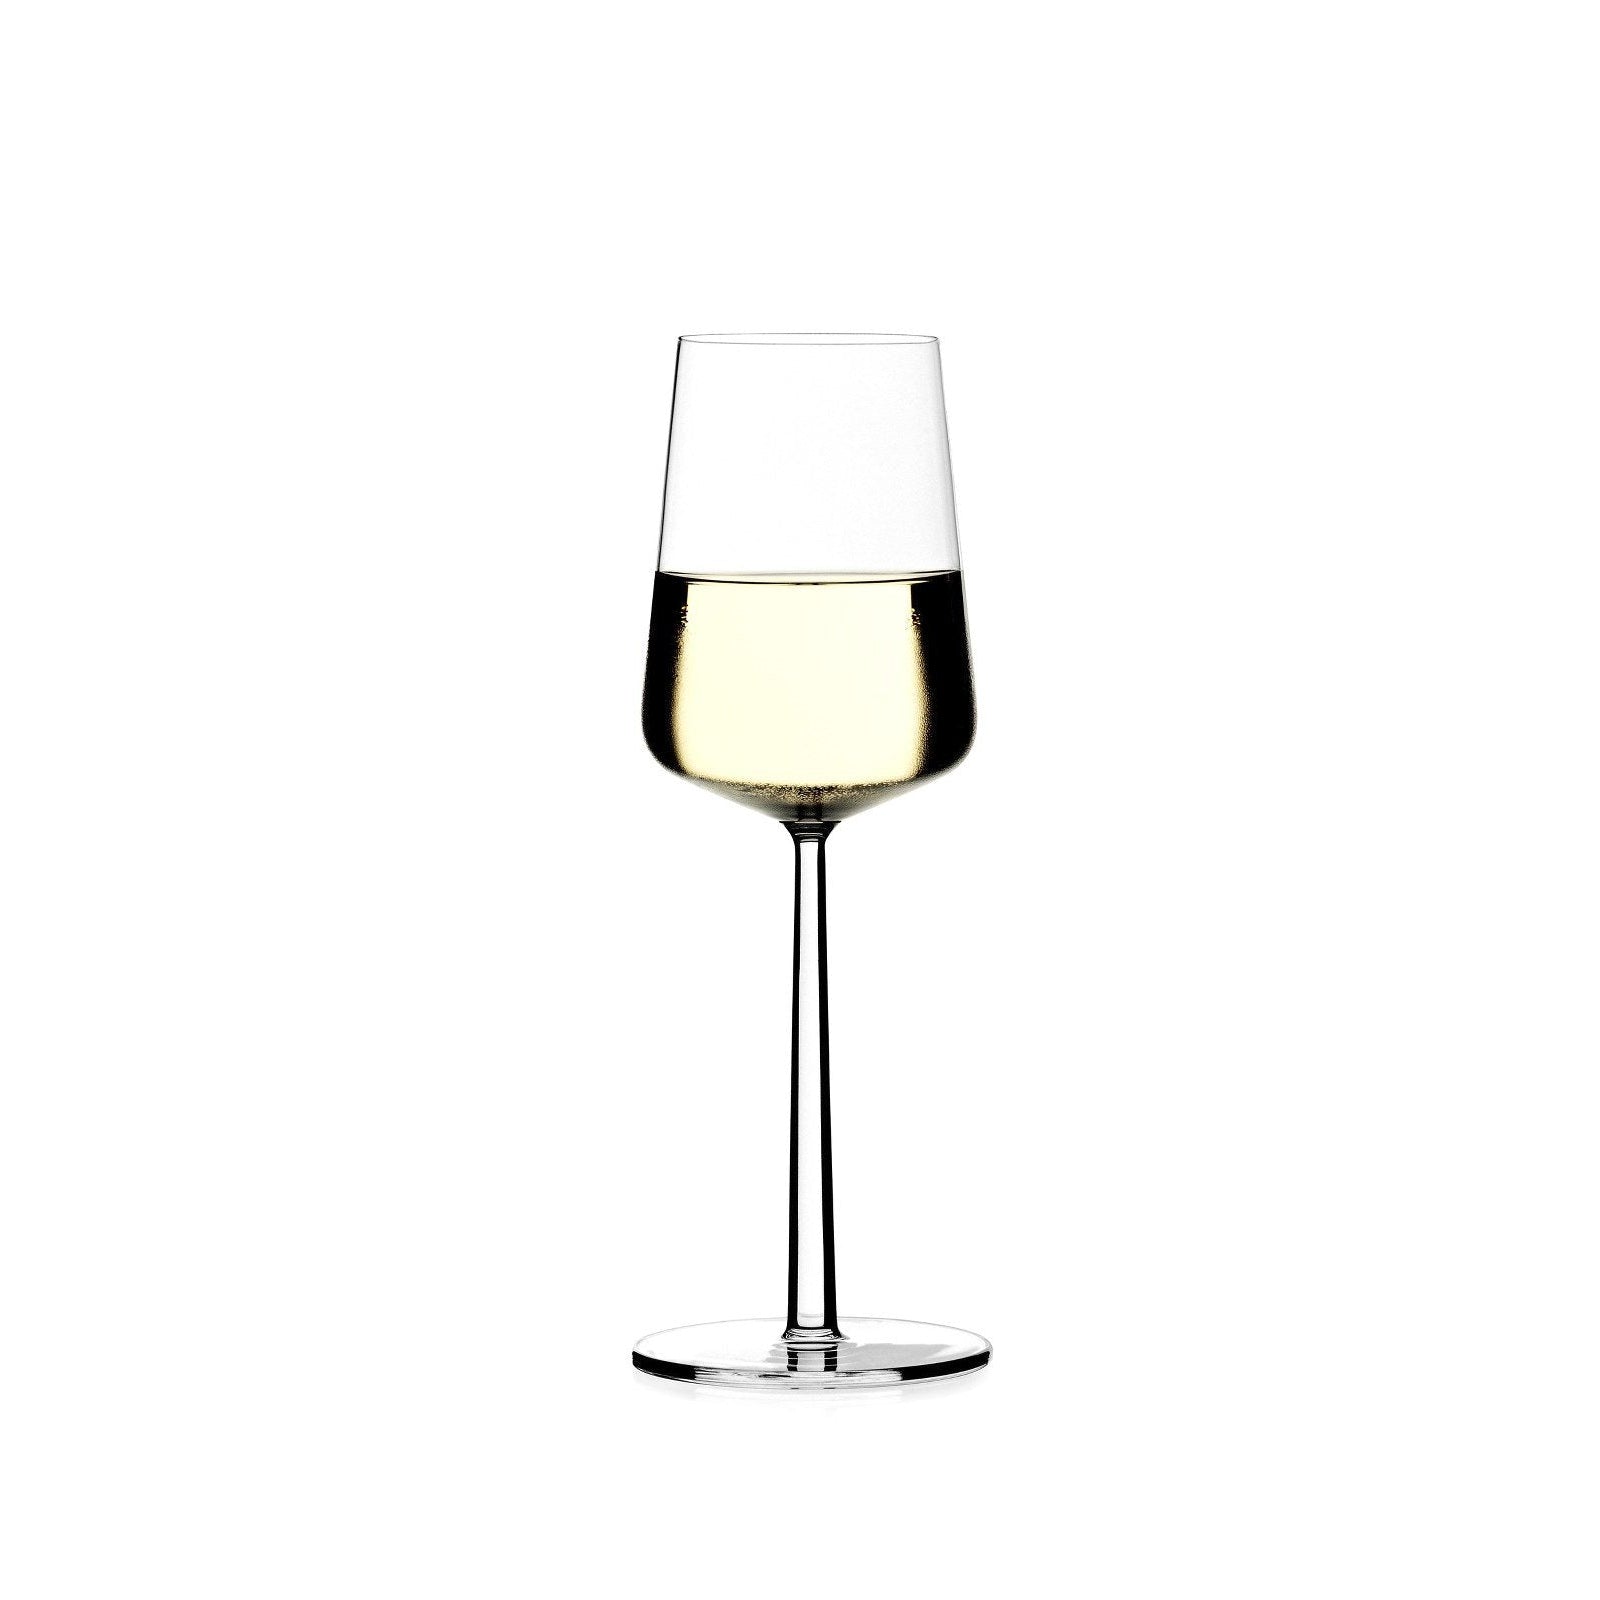 Iittala Essence White Wine kielisz się 2pcs, 33cl